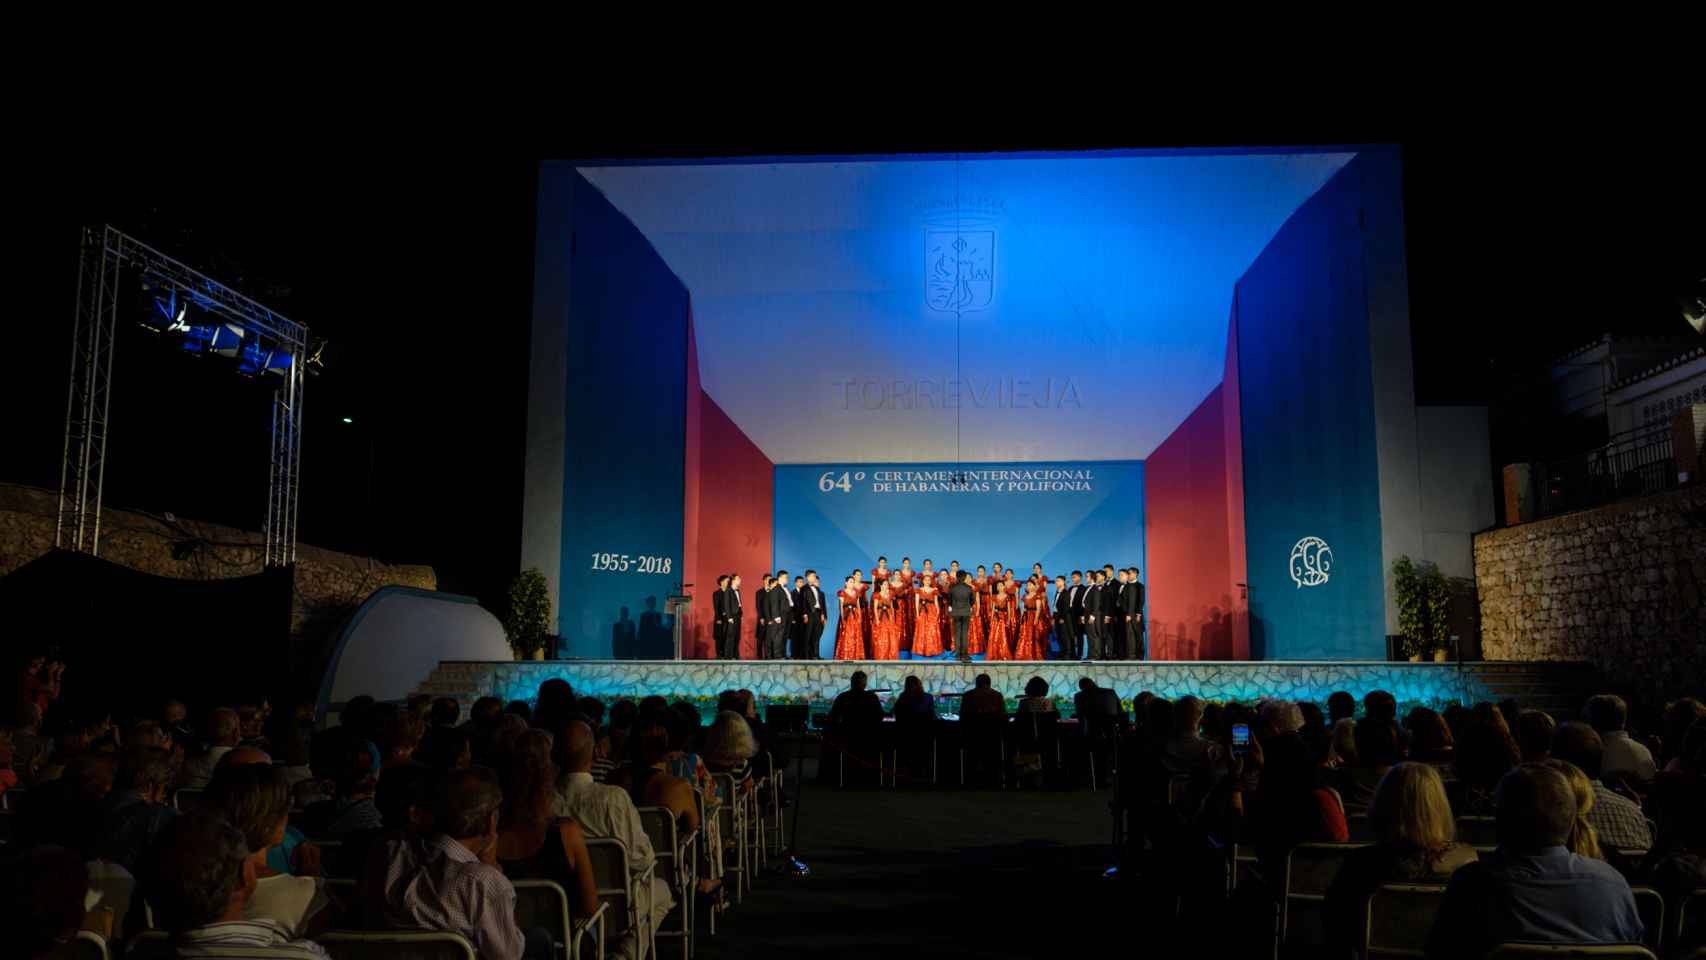 Velada de la 64 edición del certamen celebrada en Torrevieja en 2018.